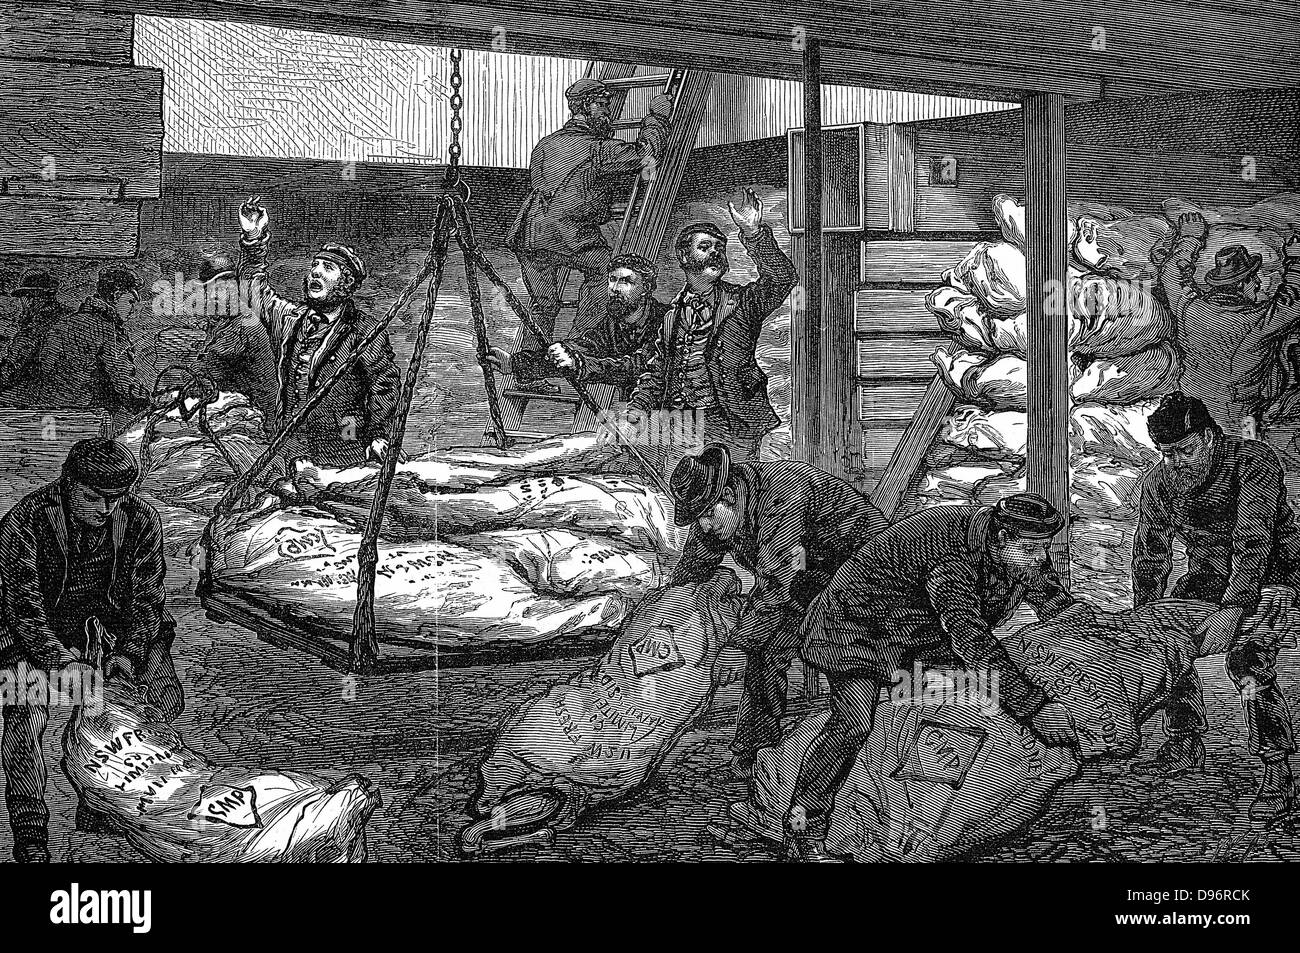 Le déchargement de la viande congelée de Sydney, en Australie, dans le sud-ouest de l'Inde Dock, Millwall, Londres. Tenir des "Catania", qui a quitté le 28 août avec près de 120 tonnes de viande. Équipé de machines de réfrigération de Haslam. Envoyé par fret McIlwraith, McEacharn & Co qui peu avant l'avait envoyé dans la première expédition historique trathleven «'. La gravure sur bois de novembre 1881. L'Australie a offert de réfrigération de grandes possibilités de développer les exportations de viande. Avant cela, la majorité des carcasses ont été rendus en bas et exportés comme des sous-produits tels que le suif. Banque D'Images